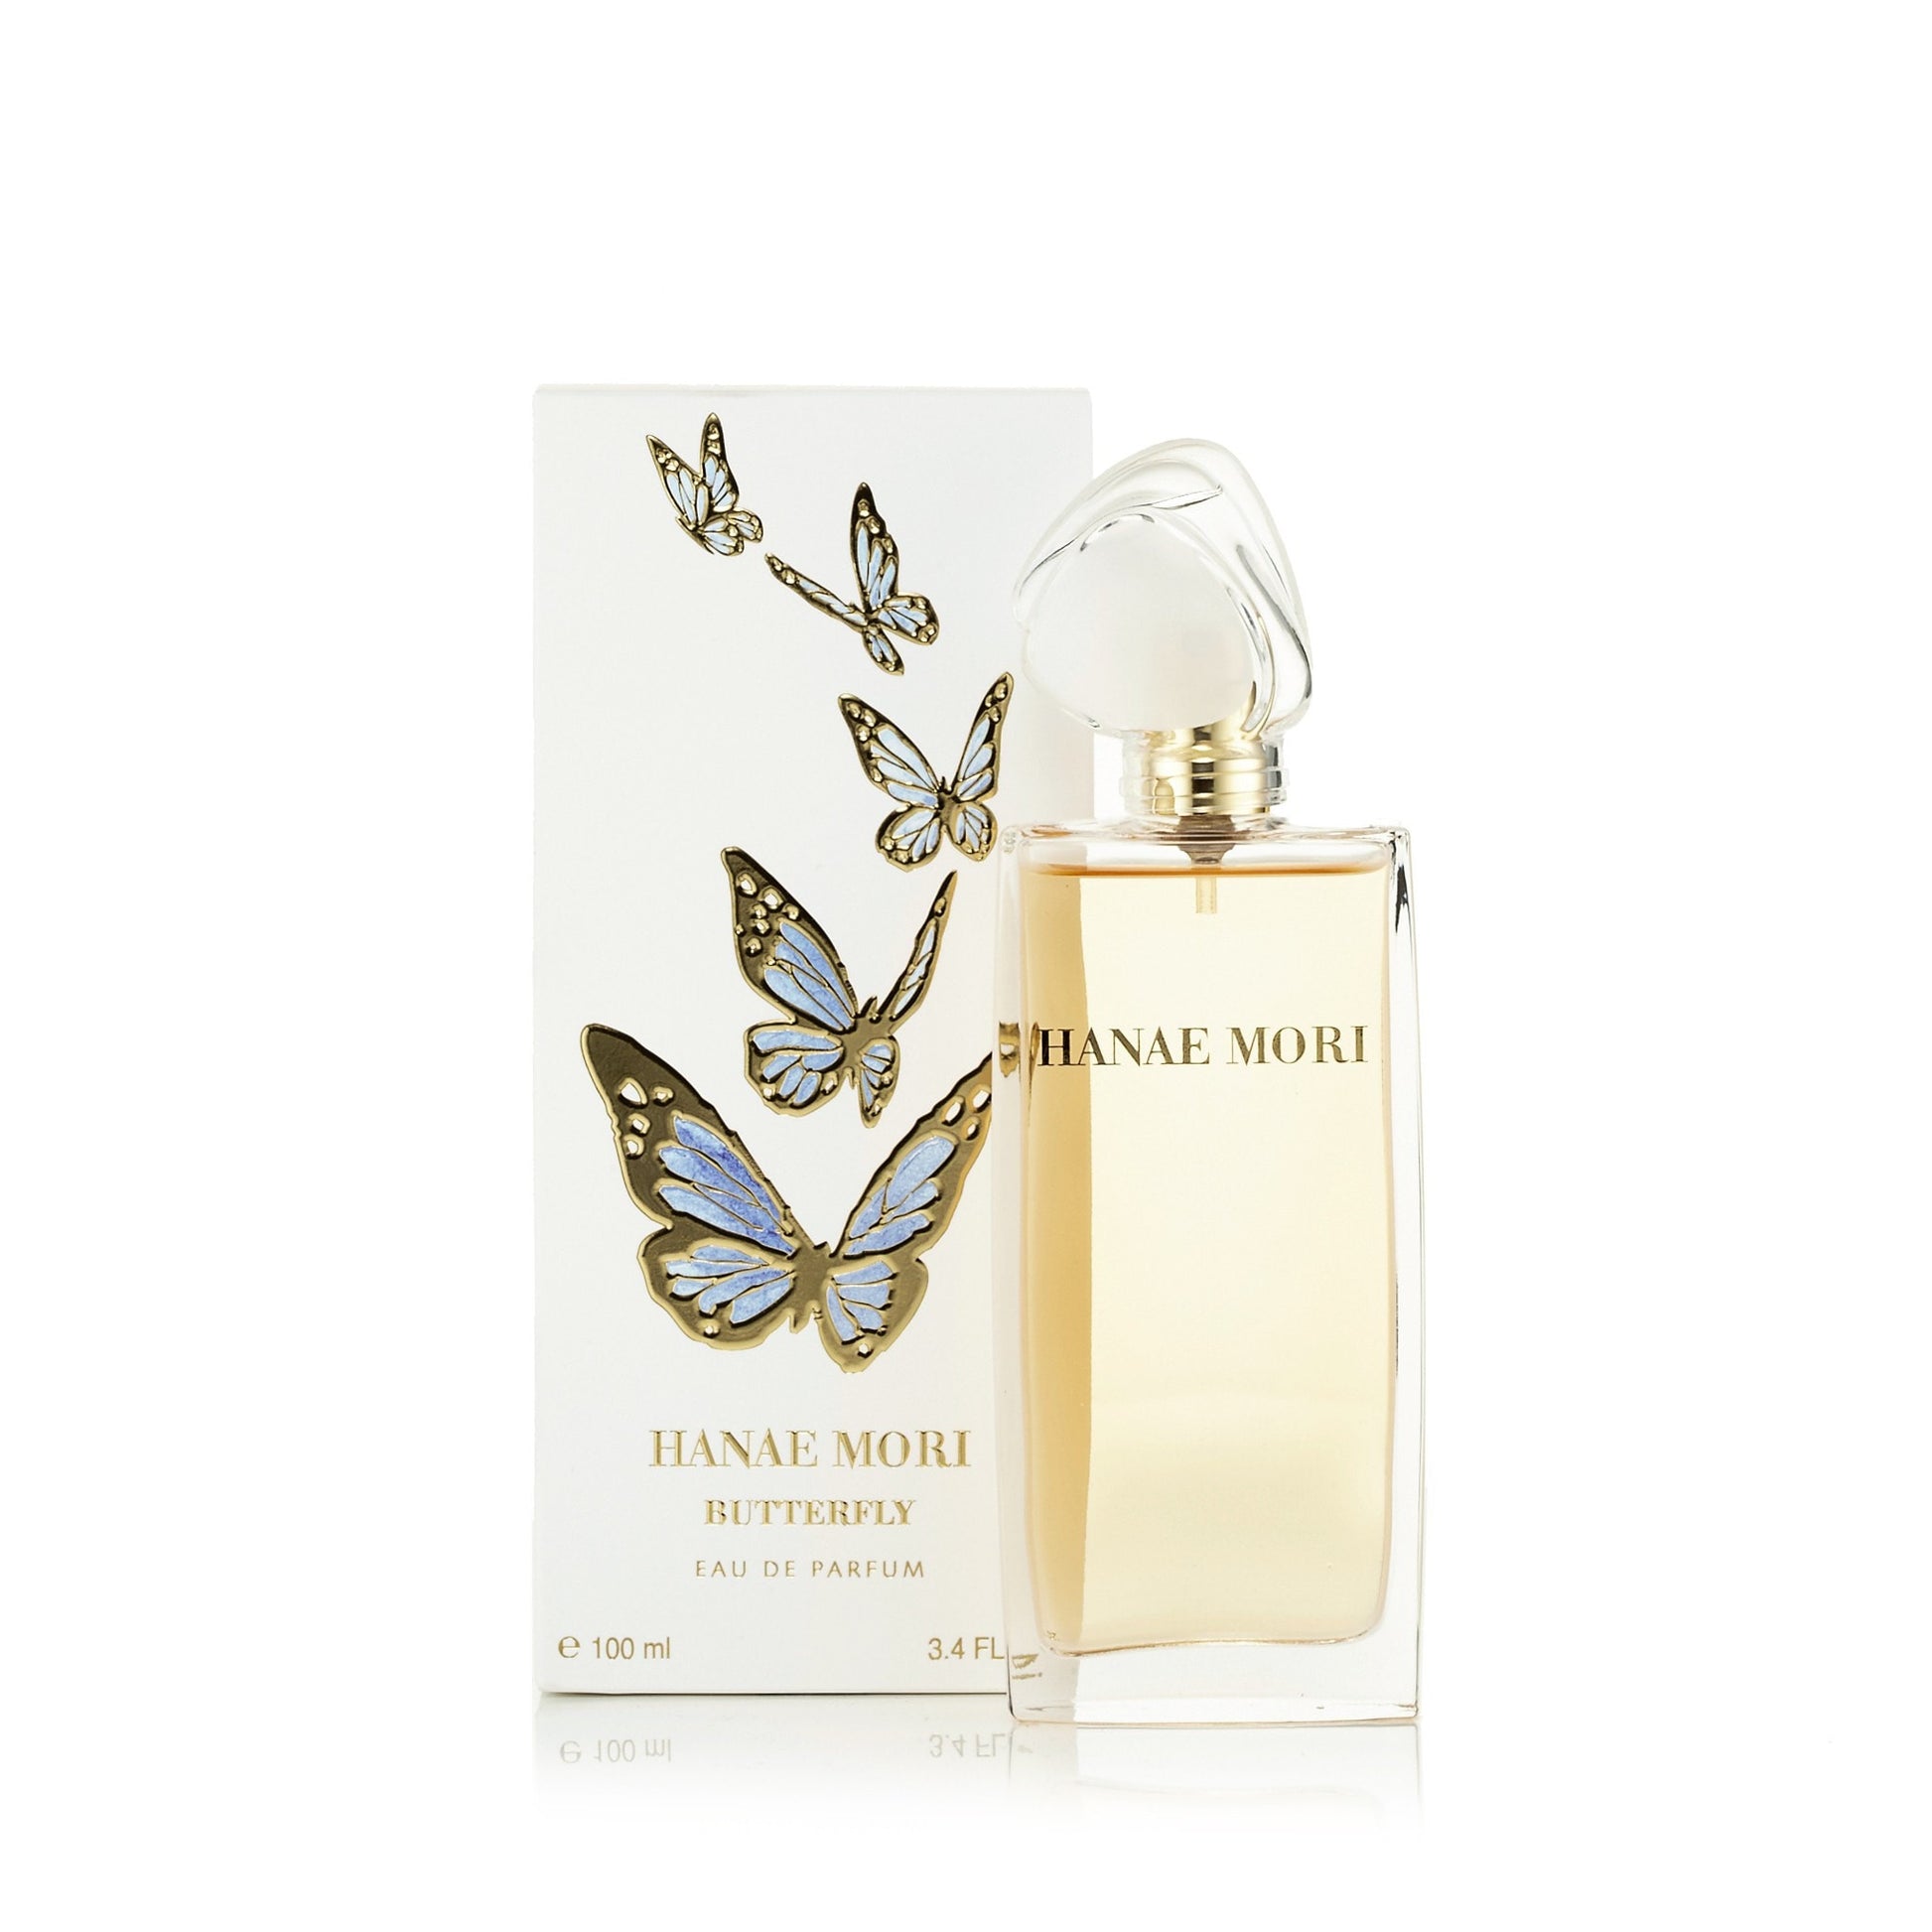 Hanae Mori Eau de Parfum for Women By Hanae Mori 3.4 oz. Click to open in modal